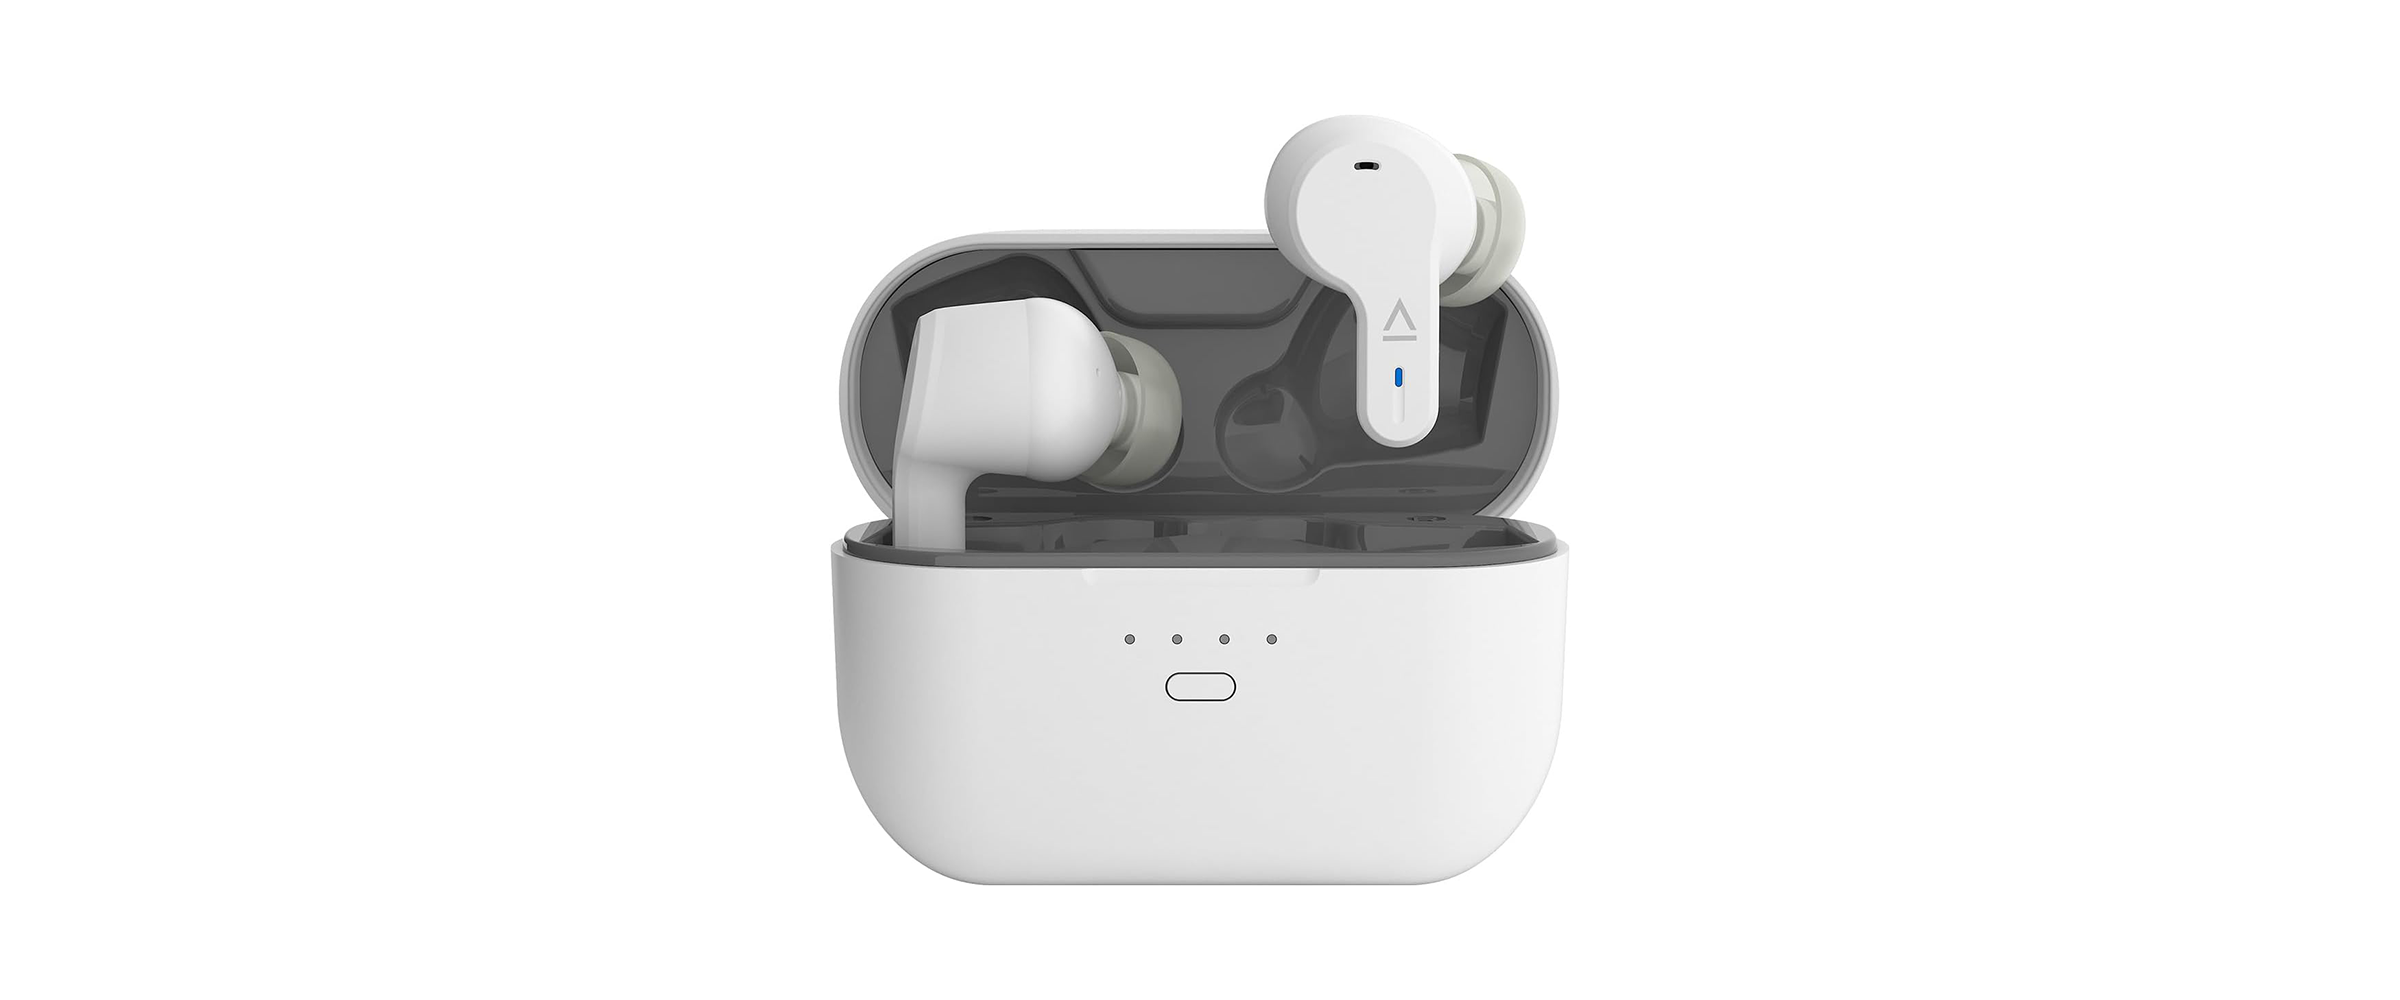 Die weißen Kopfhörer Creative Zen Air Pro vor weißem Hintergrund. Das Bild zeigt, das geöffnete, innen graue Ladeetui sowie die beiden Ohrhörer, von denen der rechte knapp über dem Etui schwebt.